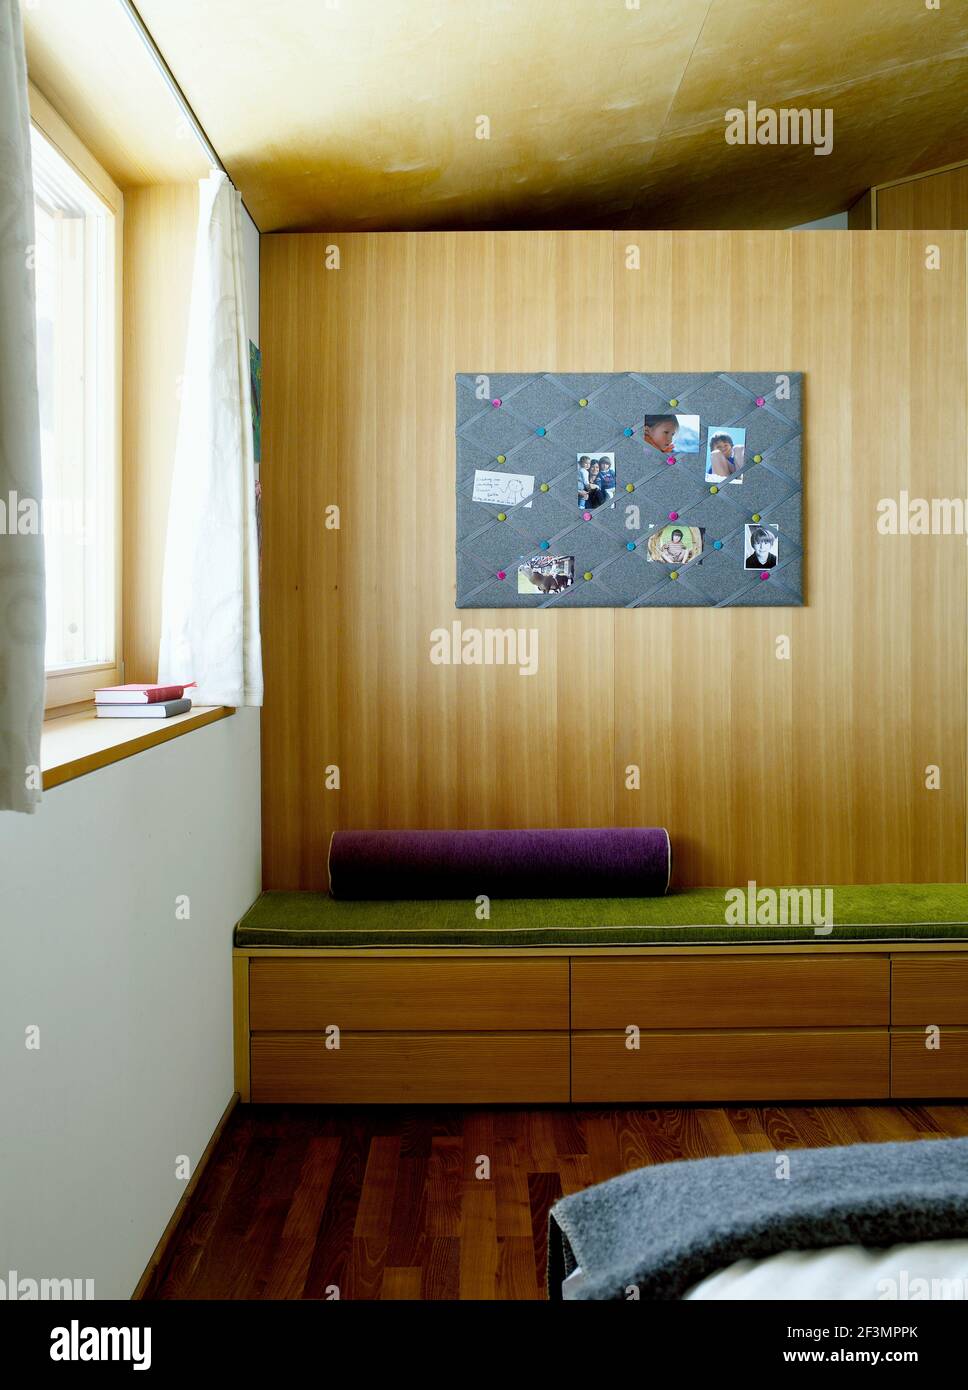 Sitzgelegenheit im Schlafzimmer mit Stauraum unten in österreichischem Haus  Stockfotografie - Alamy